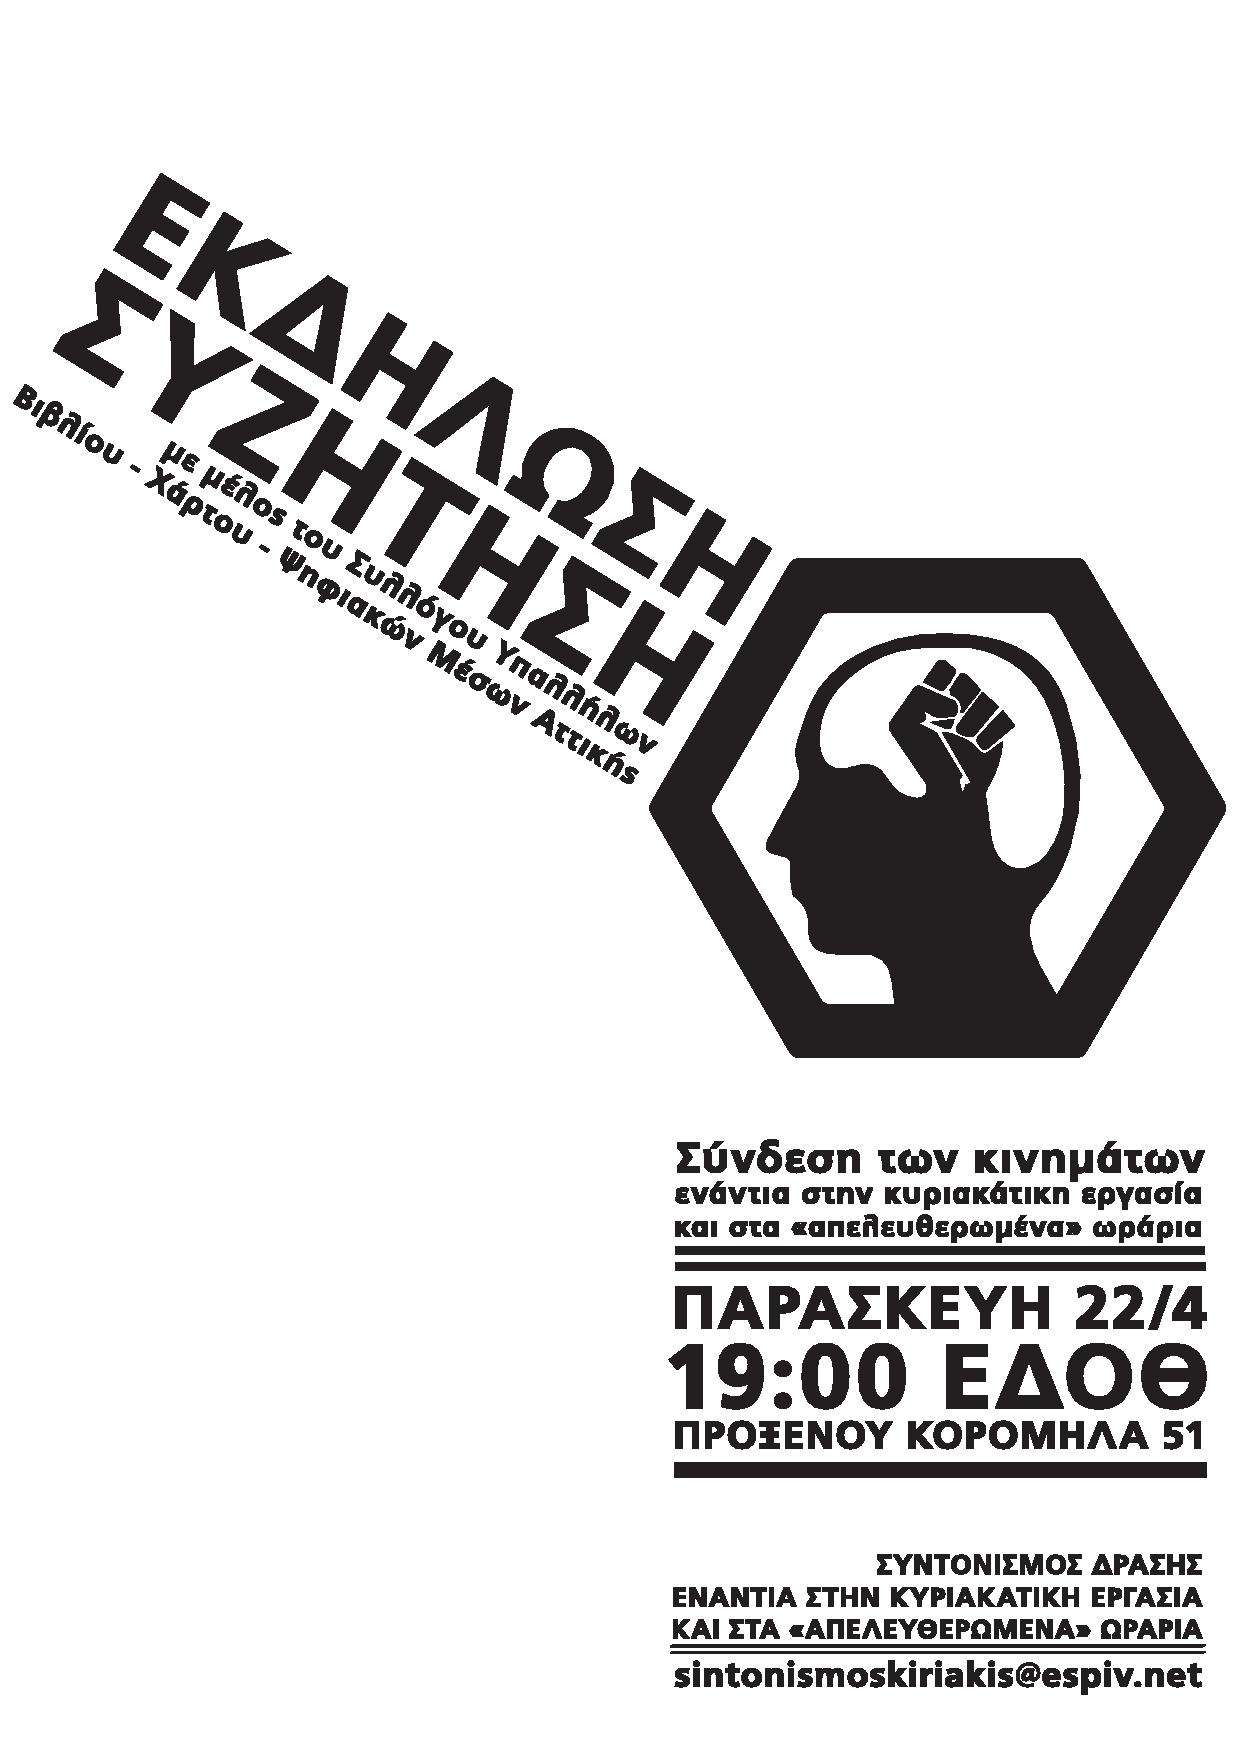 Θεσσαλονίκη: Εκδήλωση/συζήτηση συντονισμού δράσης ενάντια στην Κυριακάτικη εργασία και τα “απελευθερωμένα” ωράρια